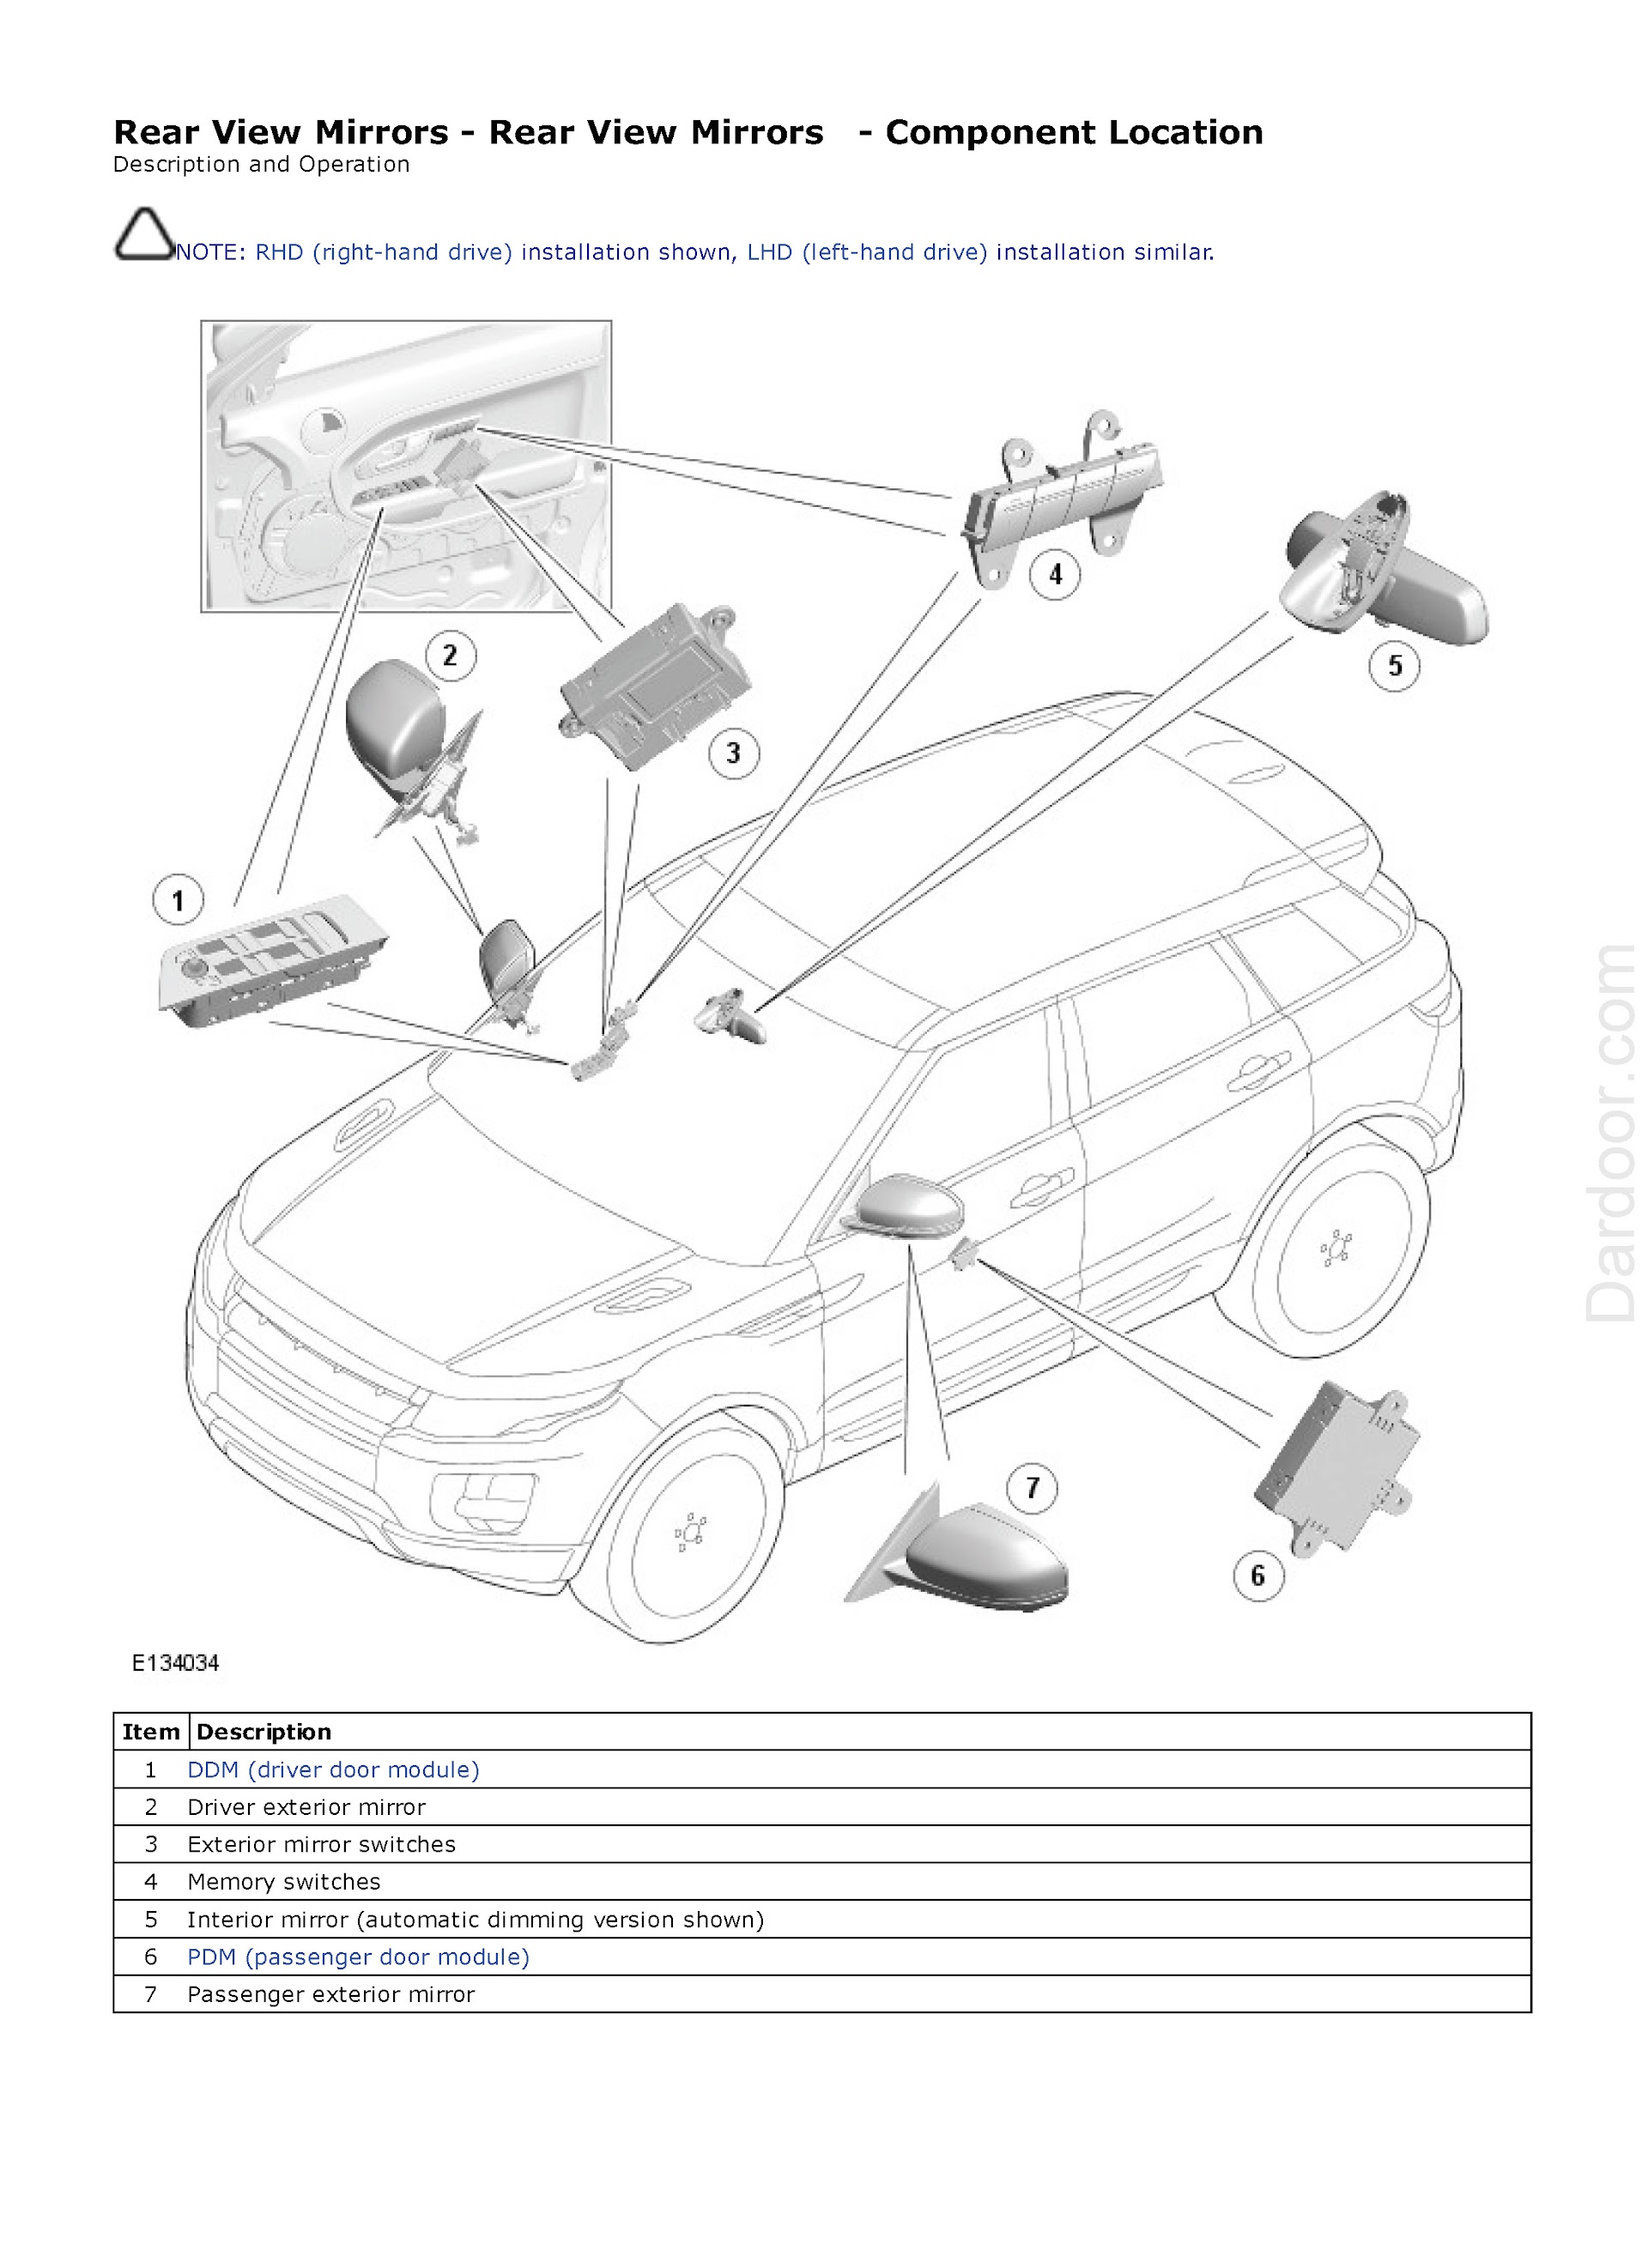 2013 Range Rover Evoque Repair Manual, Rear View Mirror